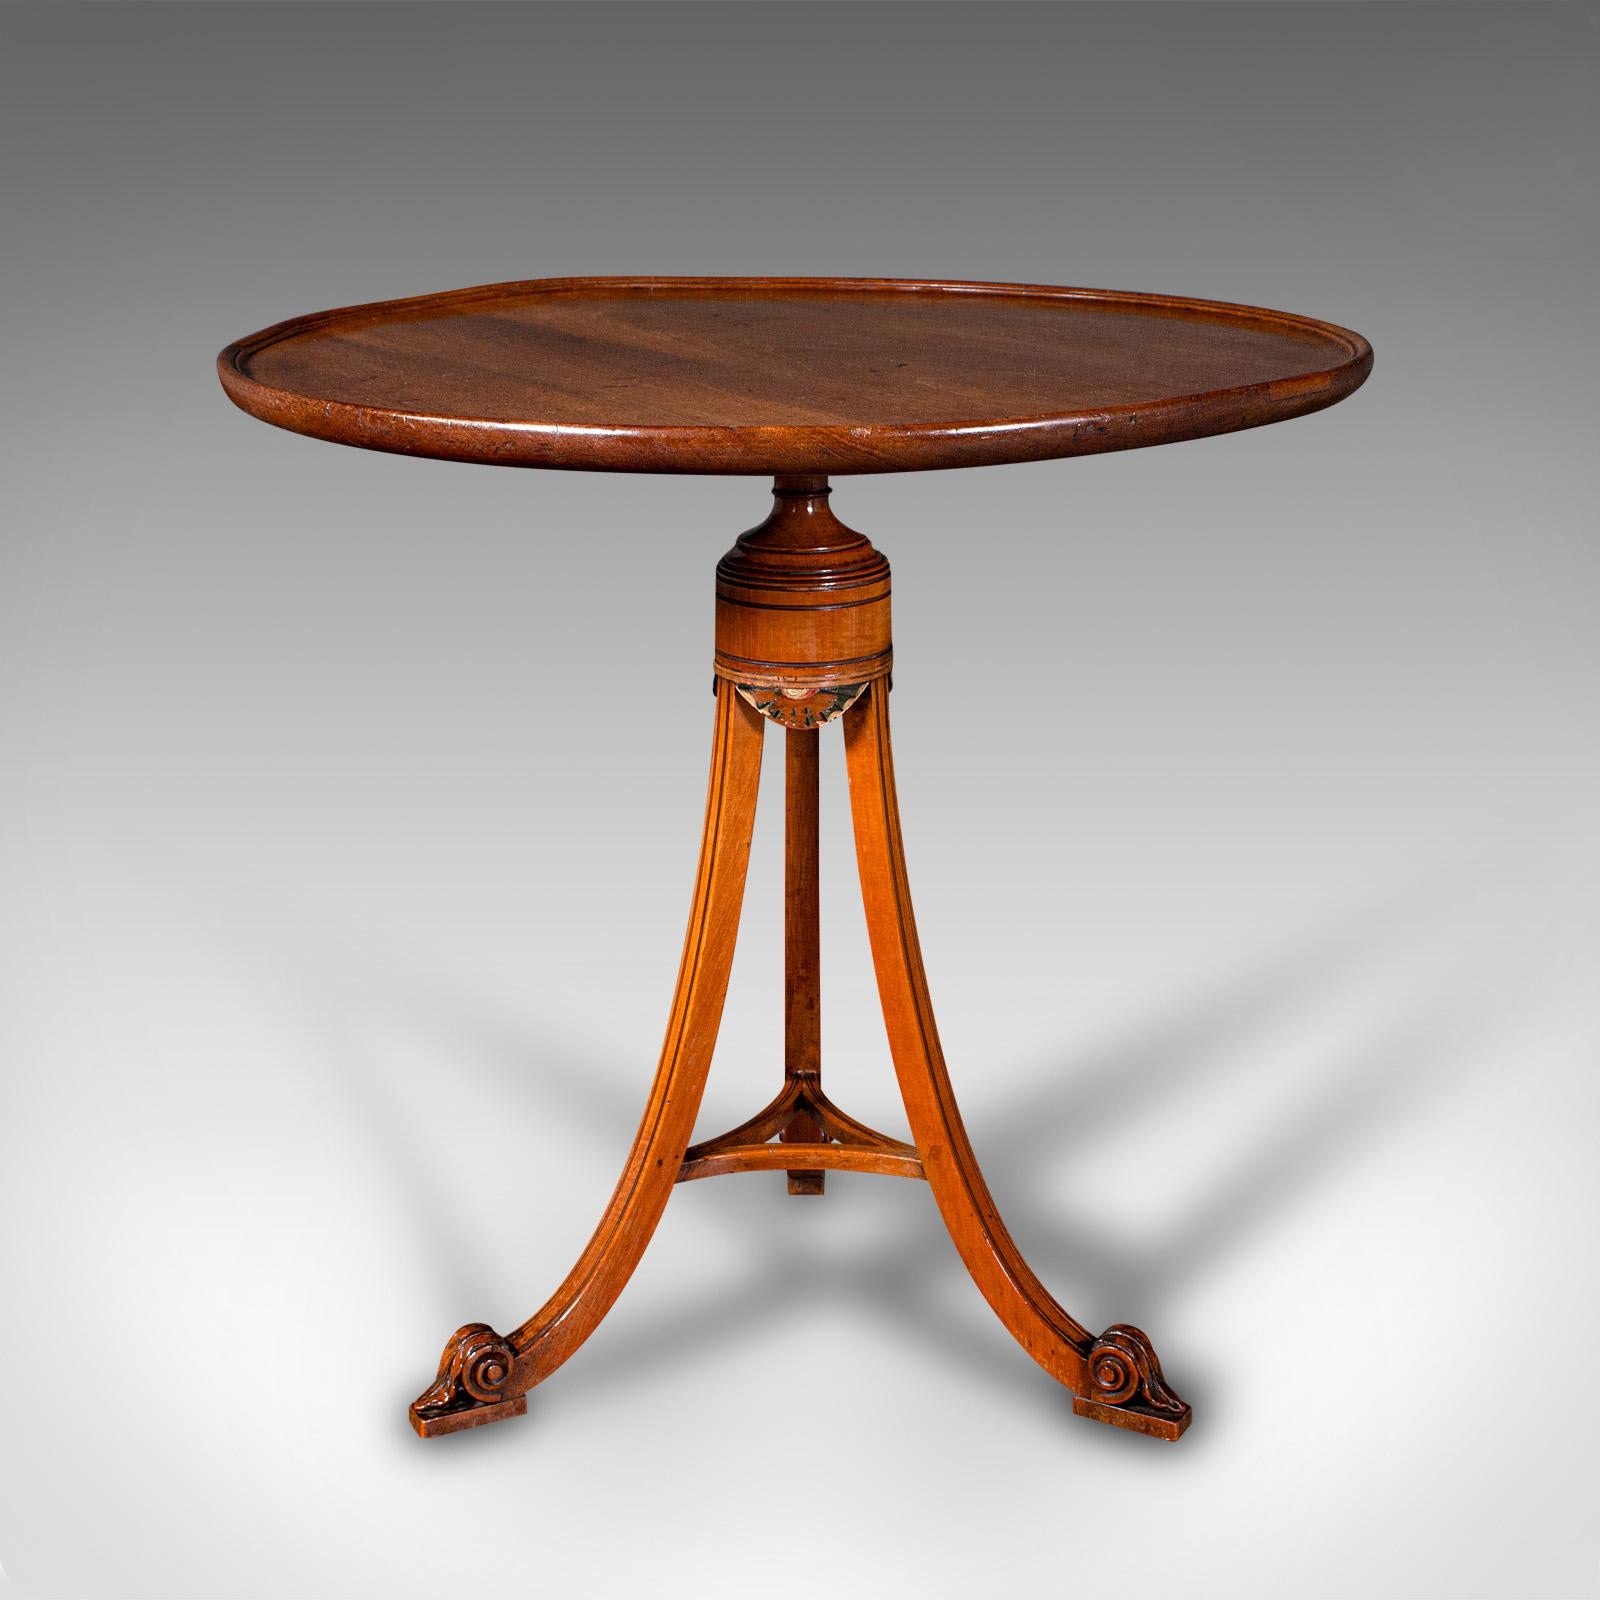 Dies ist ein kleiner antiker Weintisch. Ein englischer Dreibein-Lampentisch aus Mahagoni und Satinholz, aus der Regency-Zeit und später, um 1820.

Anmutige Handwerkskunst mit einer reizvollen, auffallenden Farbe
Zeigt eine wünschenswerte gealterte